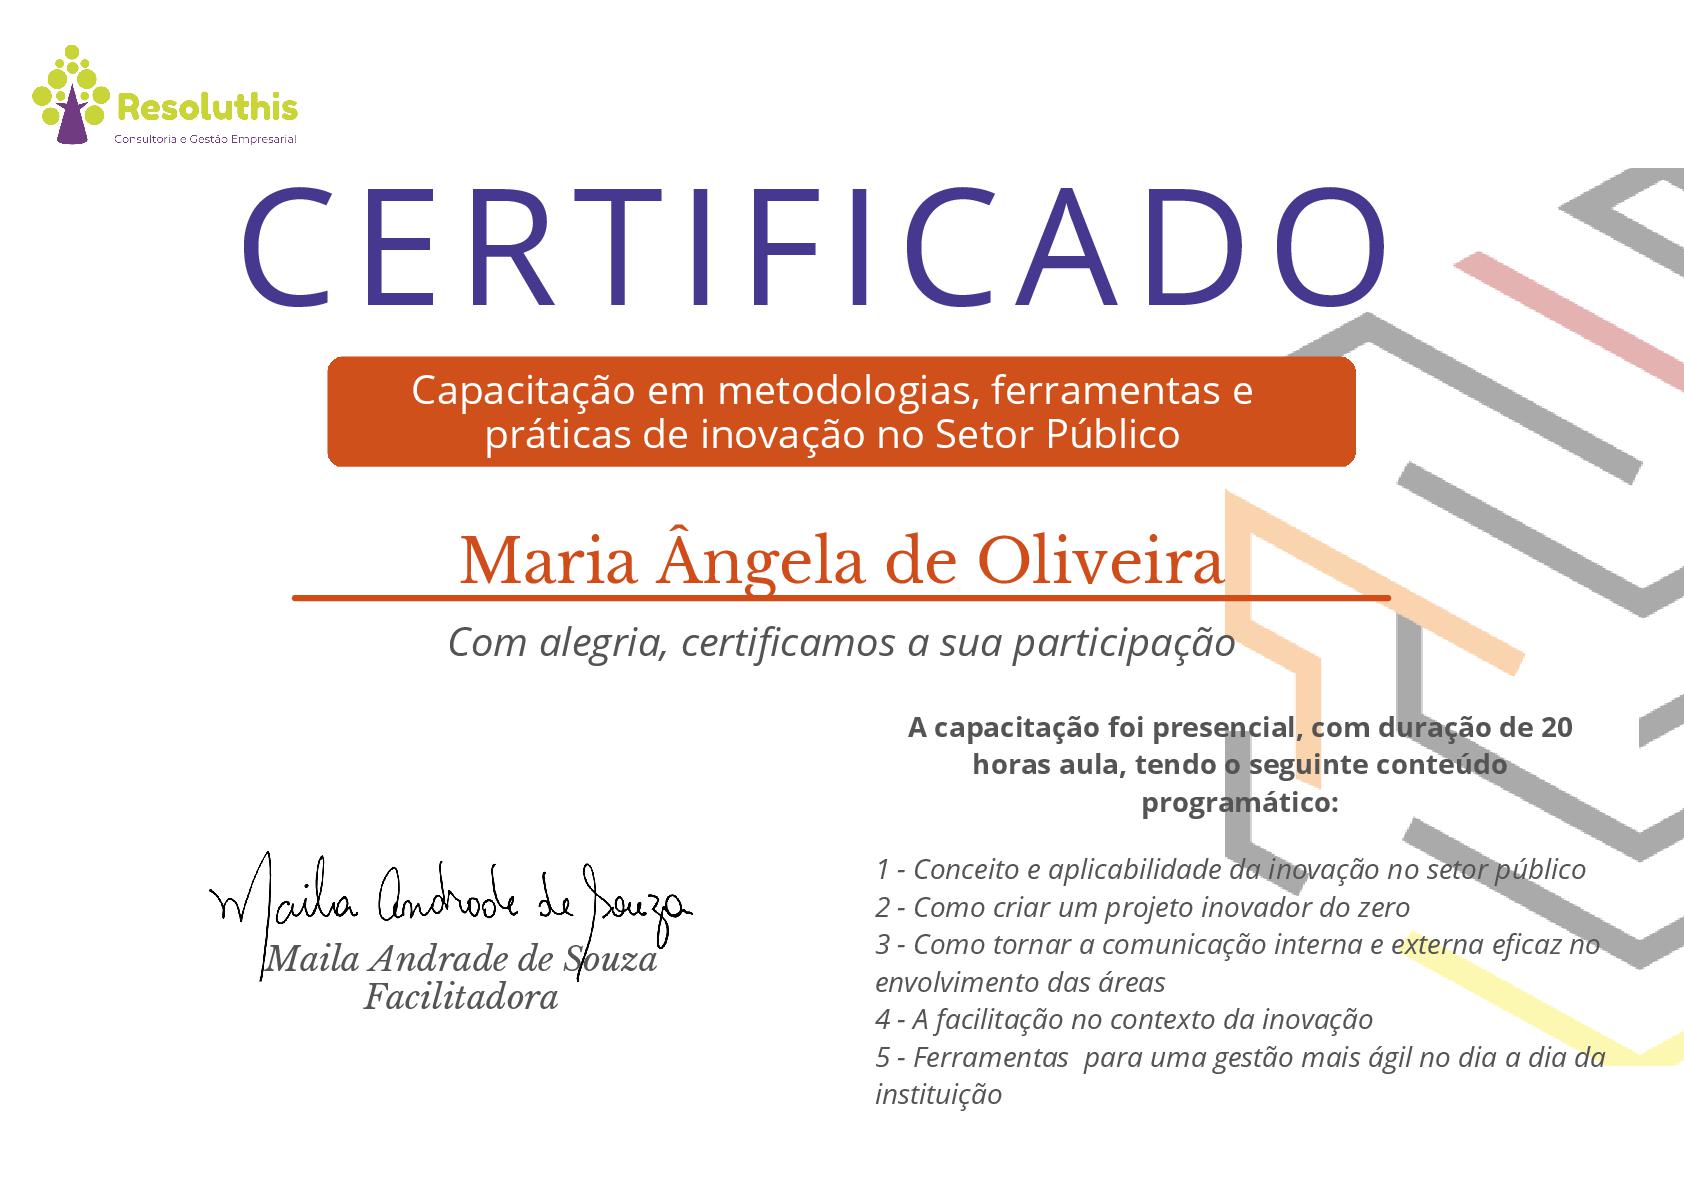 Imagem do Certificado de Maria Ângela de Oliveira na Capacitação em metodologias, ferramentas e práticas de inovação no Setor Público.